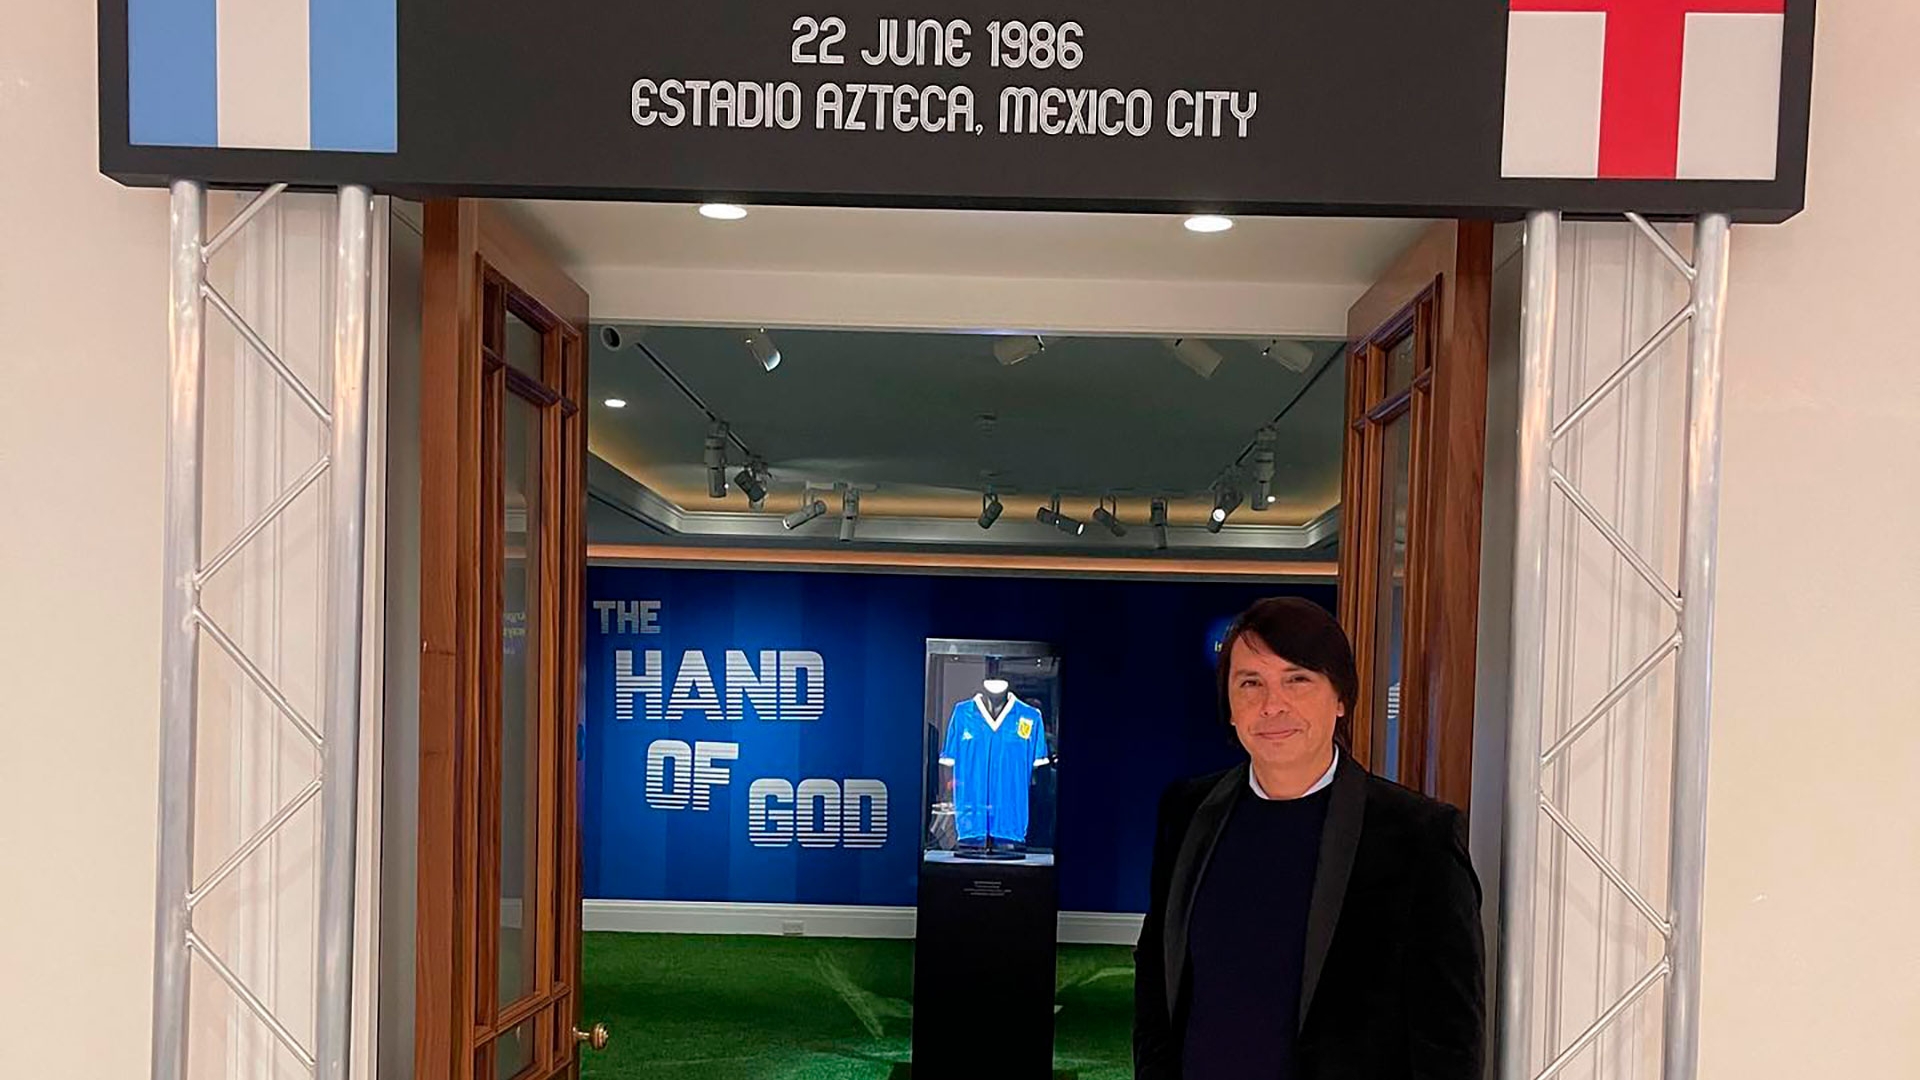 Marcelo Ordas pujó hasta último momento para quedarse con la camiseta de Diego Armando Maradona(@marcelo_ordas_ok)